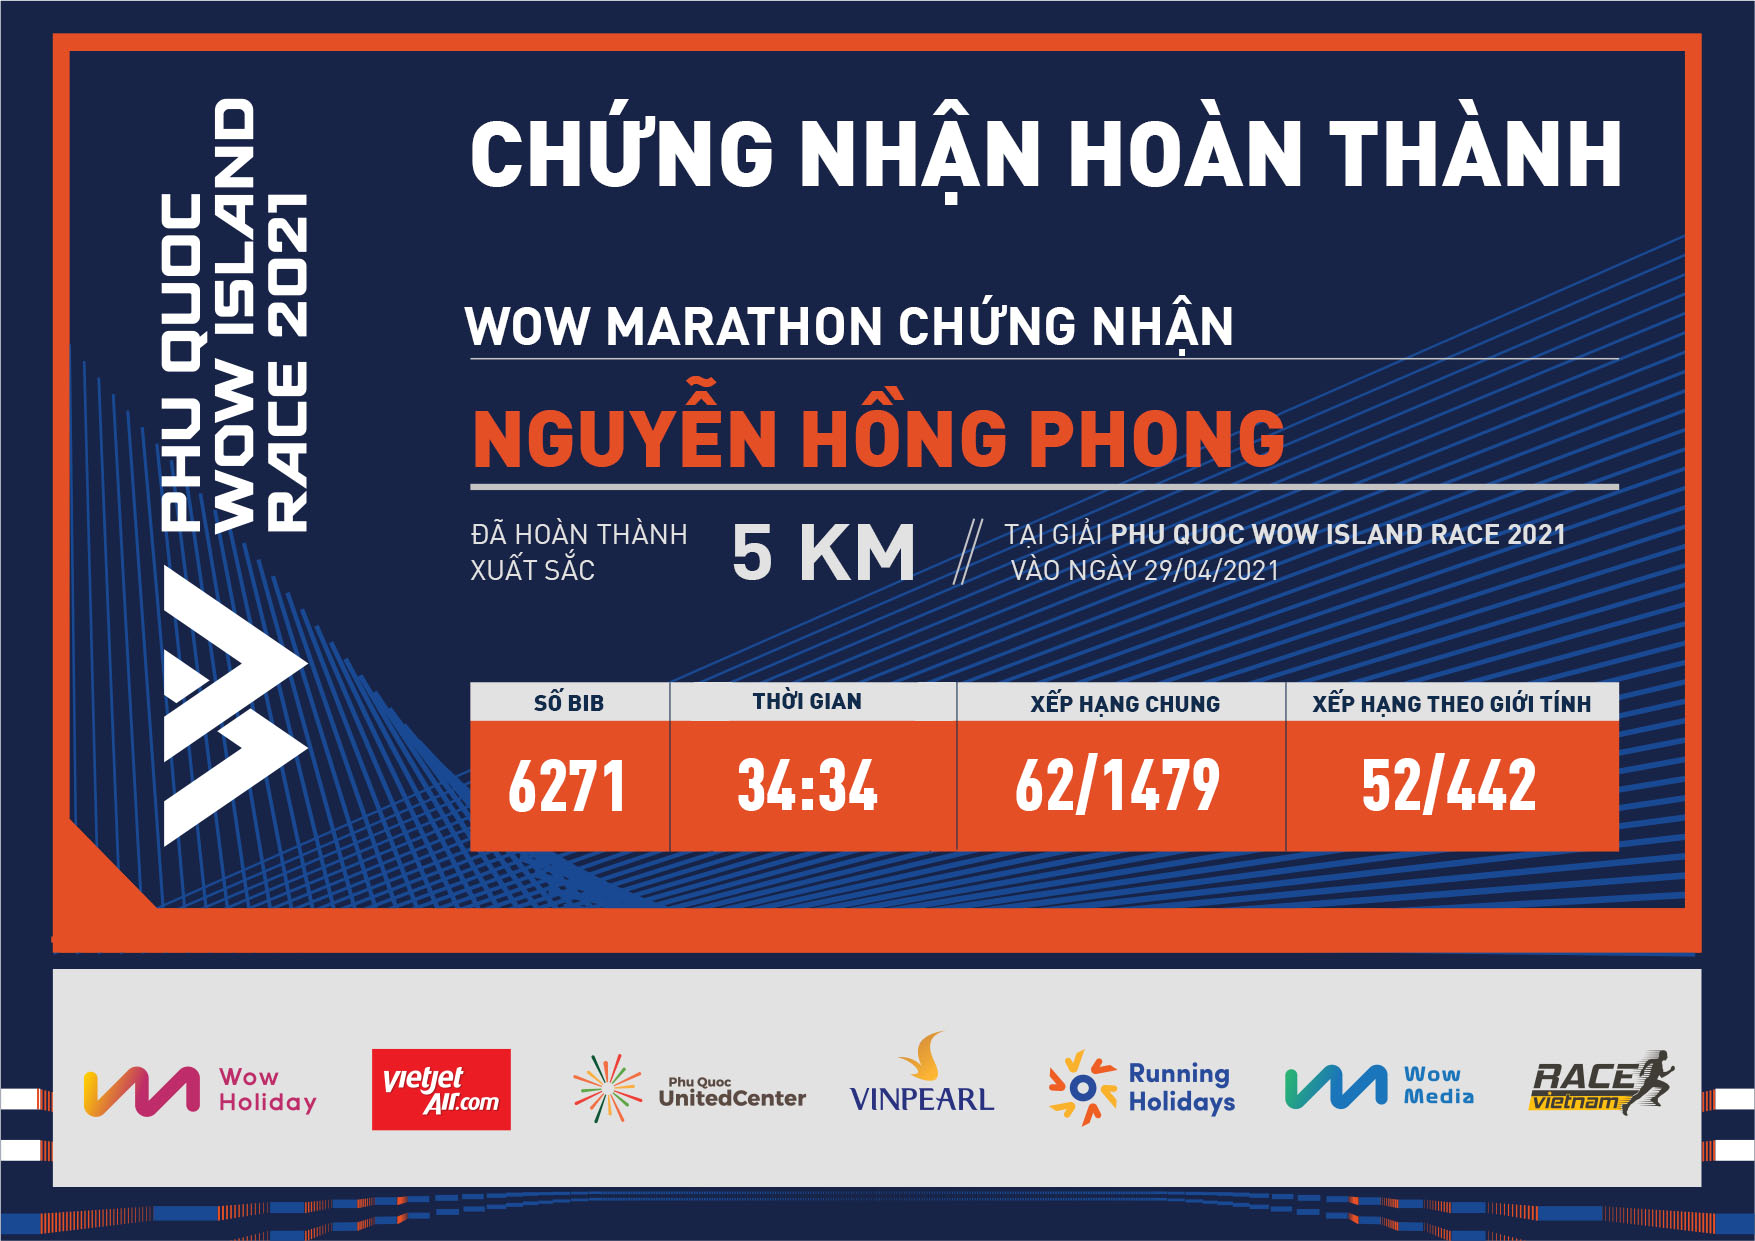 6271 - Nguyễn Hồng Phong